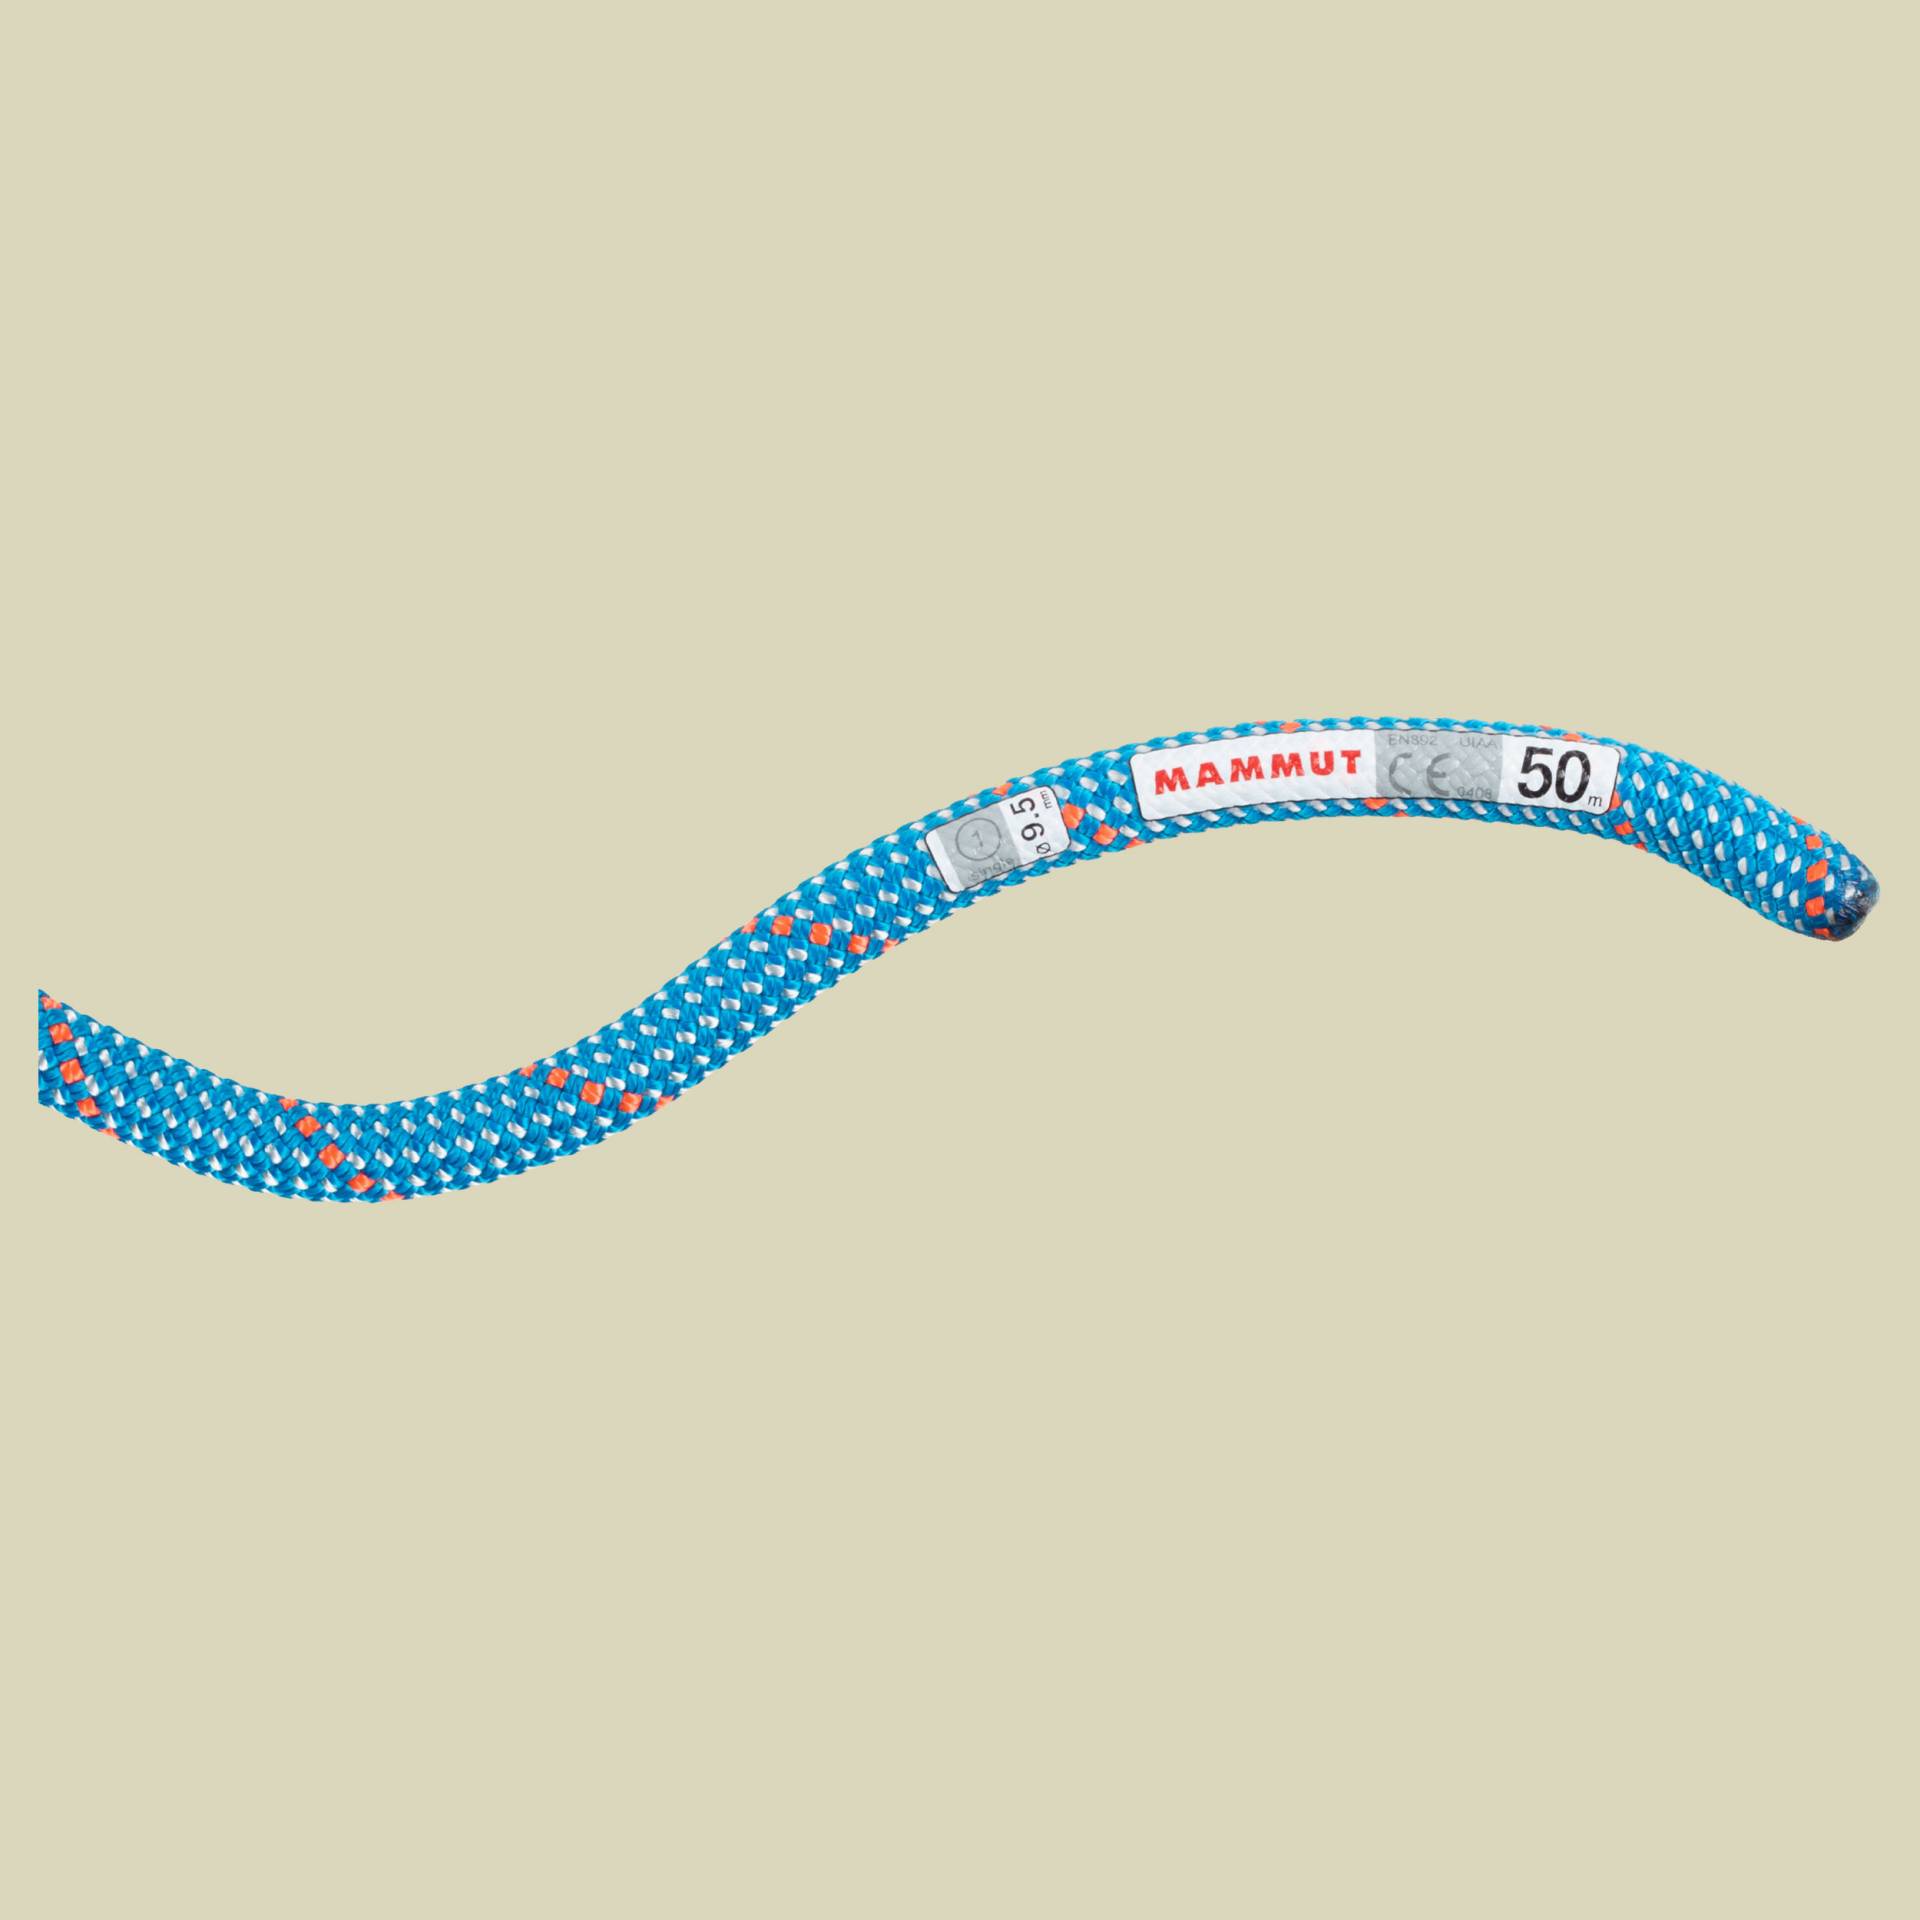 9.5 Crag Classic Rope Länge 70 m Farbe Classic Standard blue-white von mammut